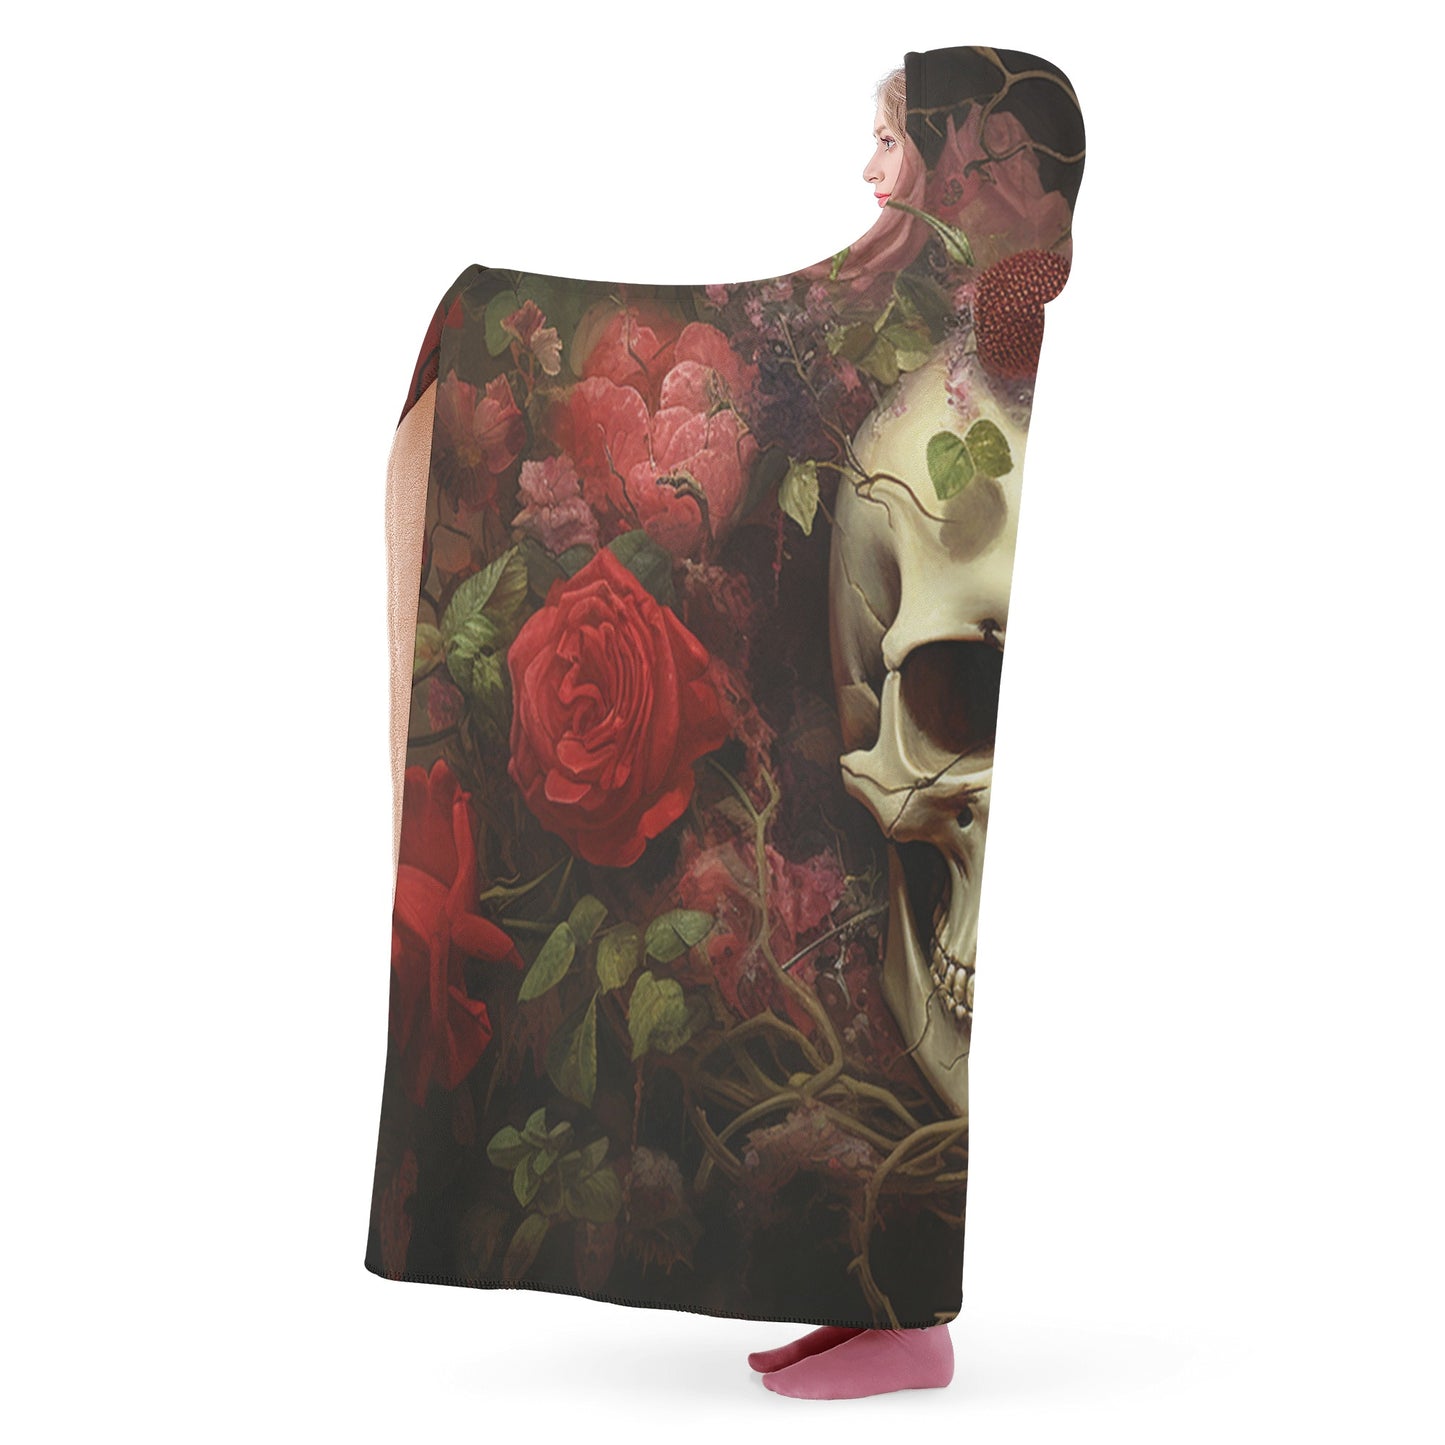 Neduz Rose Skull Gothic Art Hooded Throw Blanket